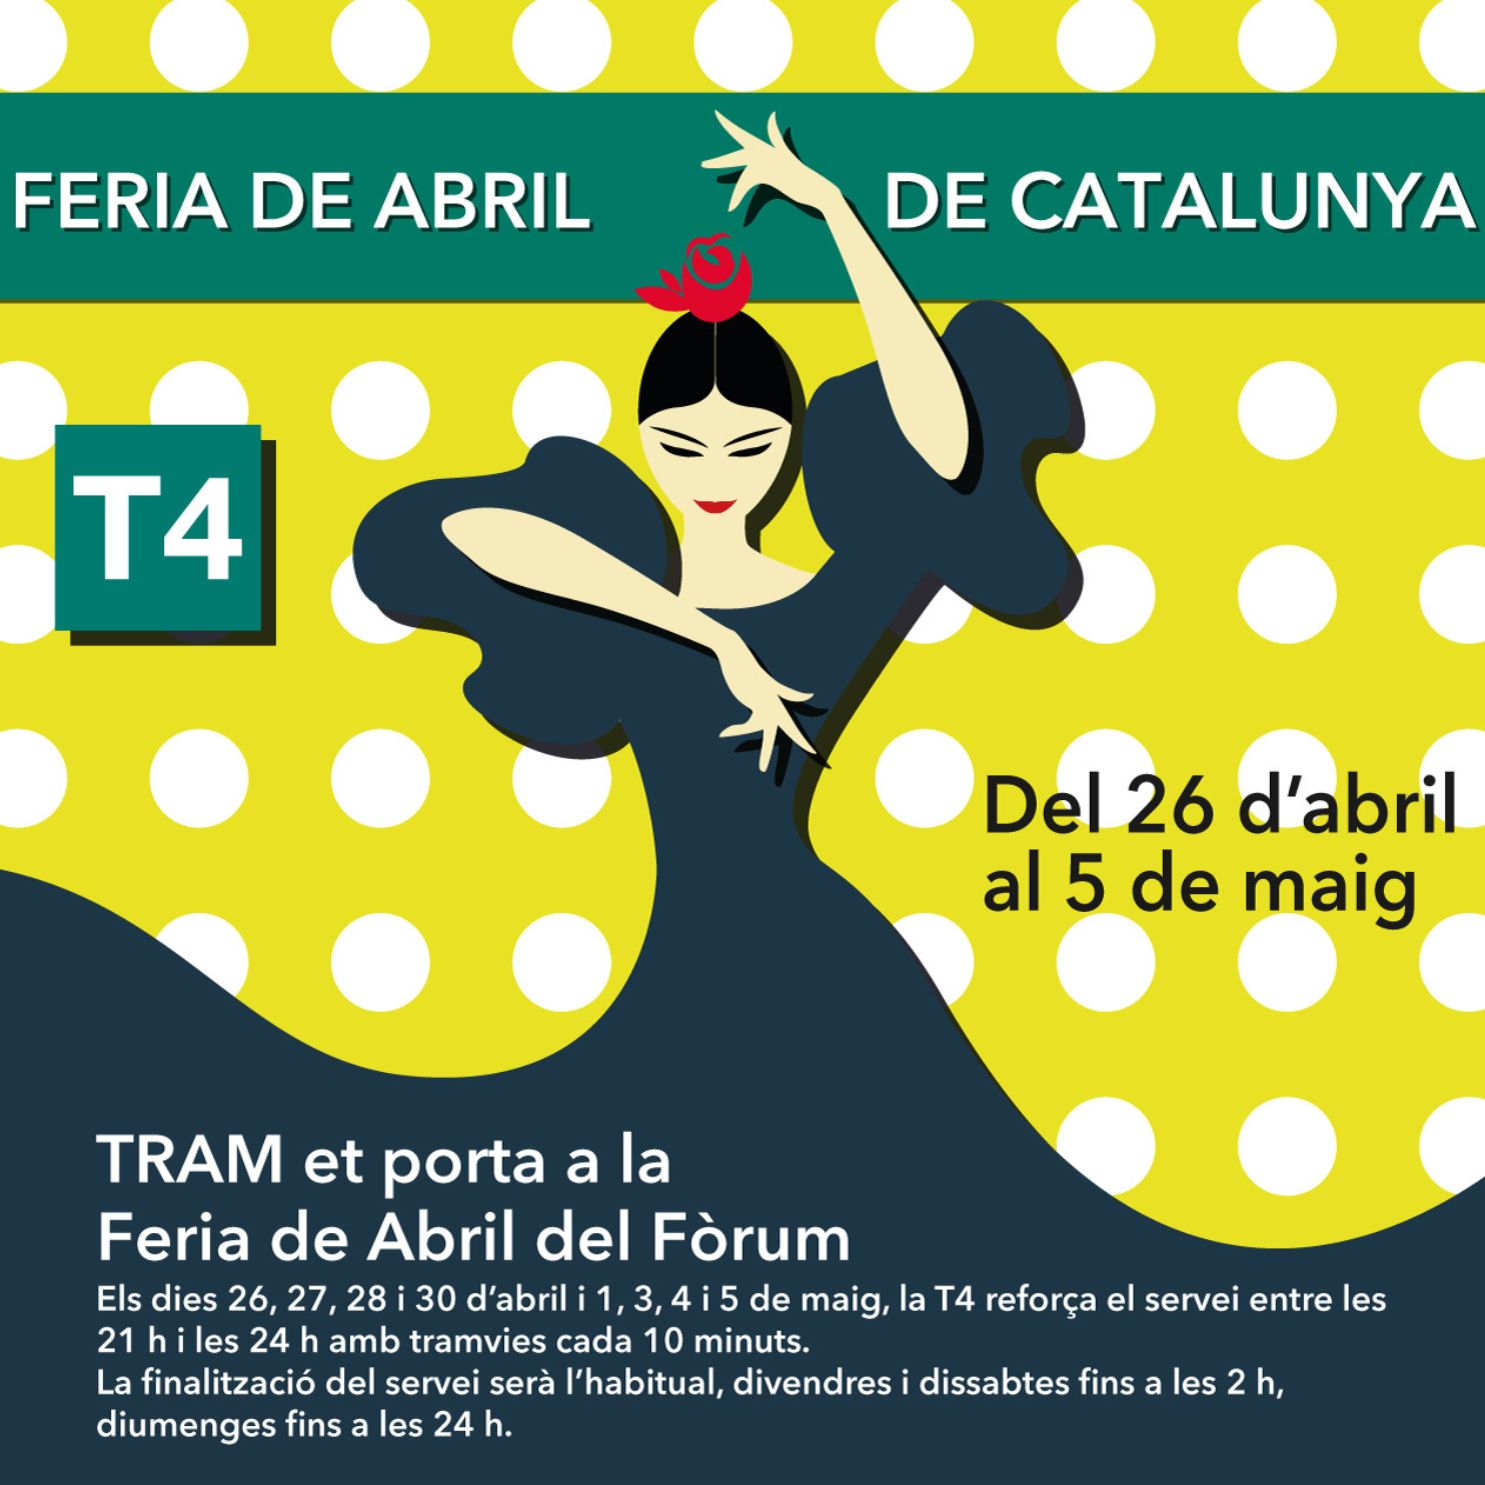 La Feria d’Abril il·lumina i omple de sabor andalús el Fòrum